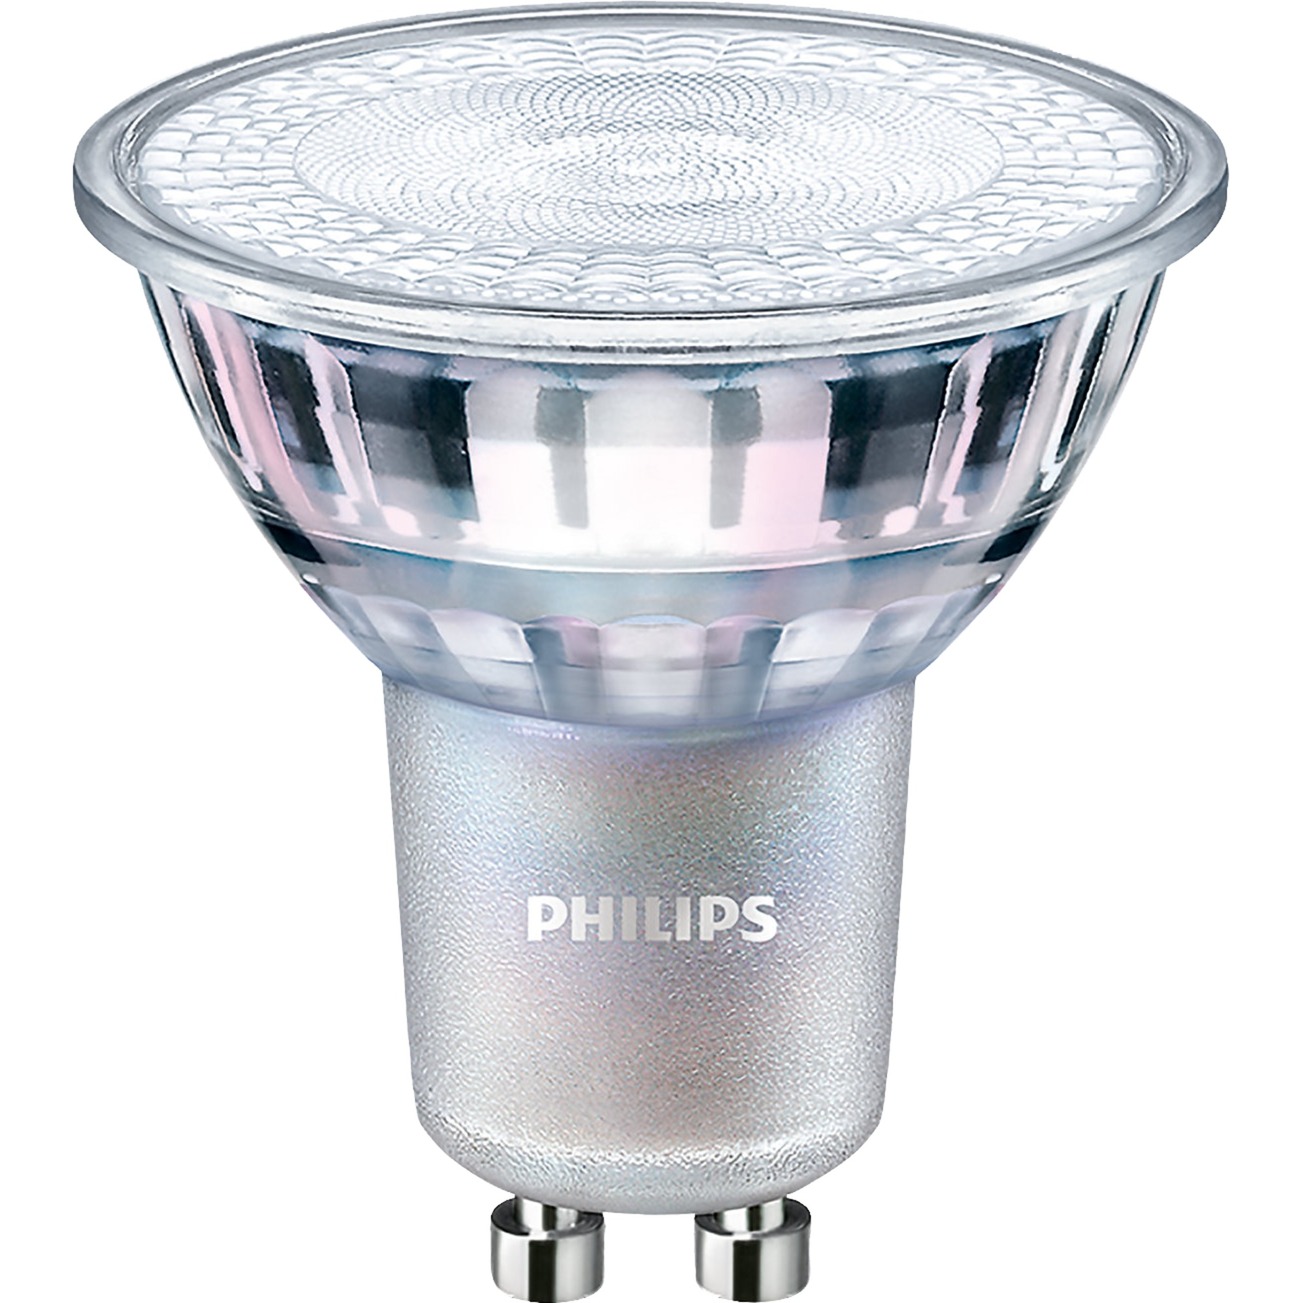 MASTER LEDspot Value D 4.9-50W GU10 930 60D, LED-Lampe von Philips